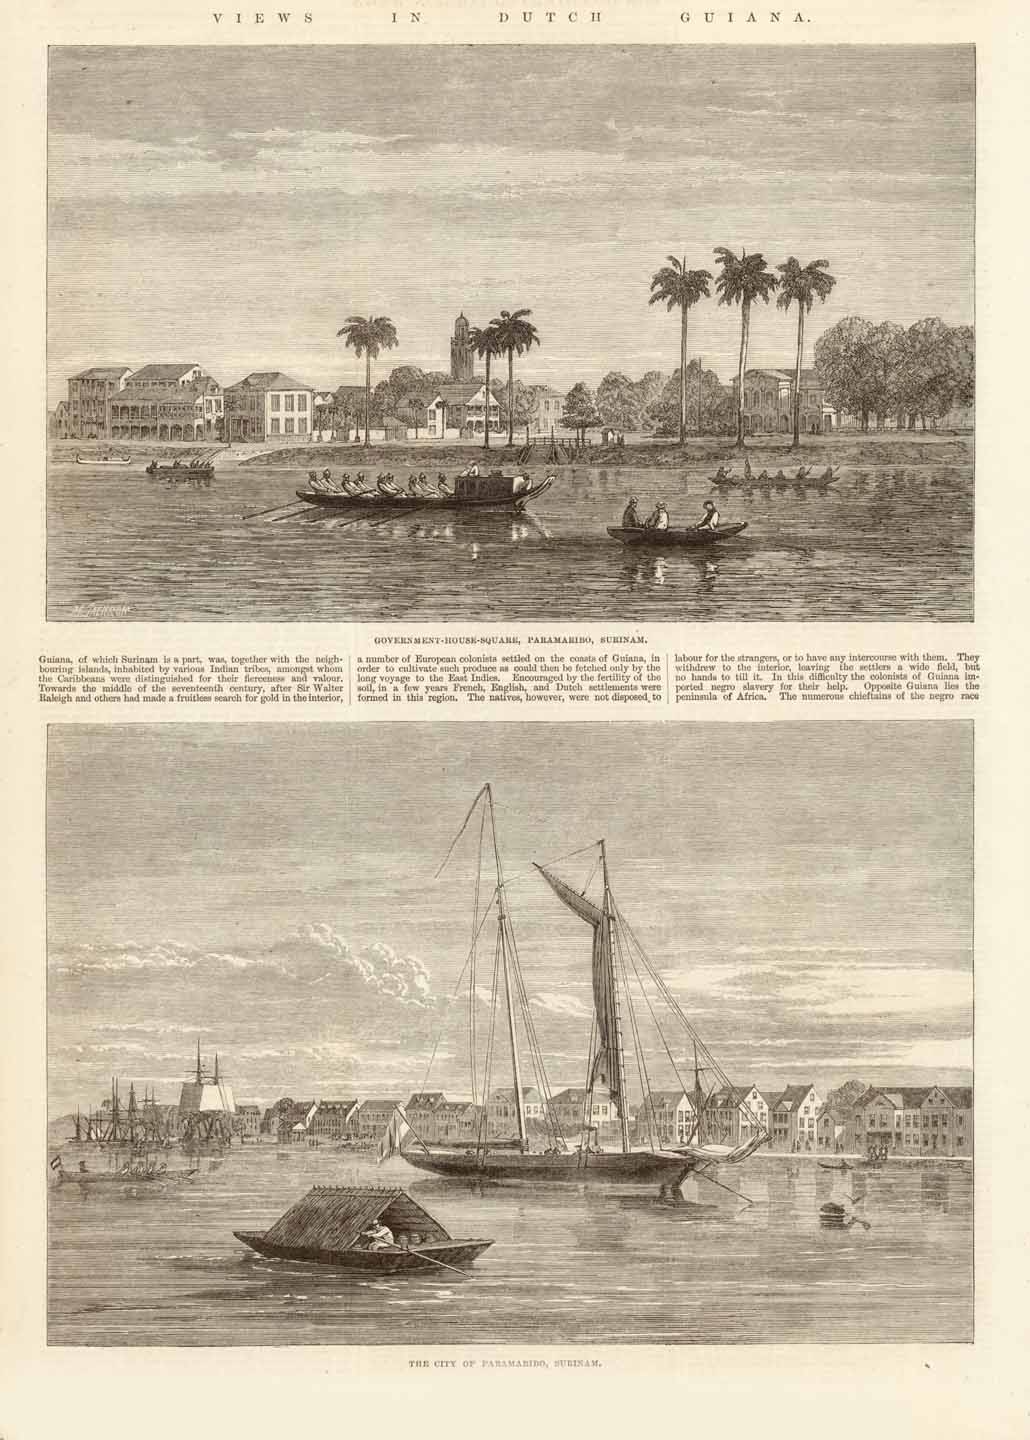 City Views, South America, Dutch Guiana, Paramaribo, Surinam